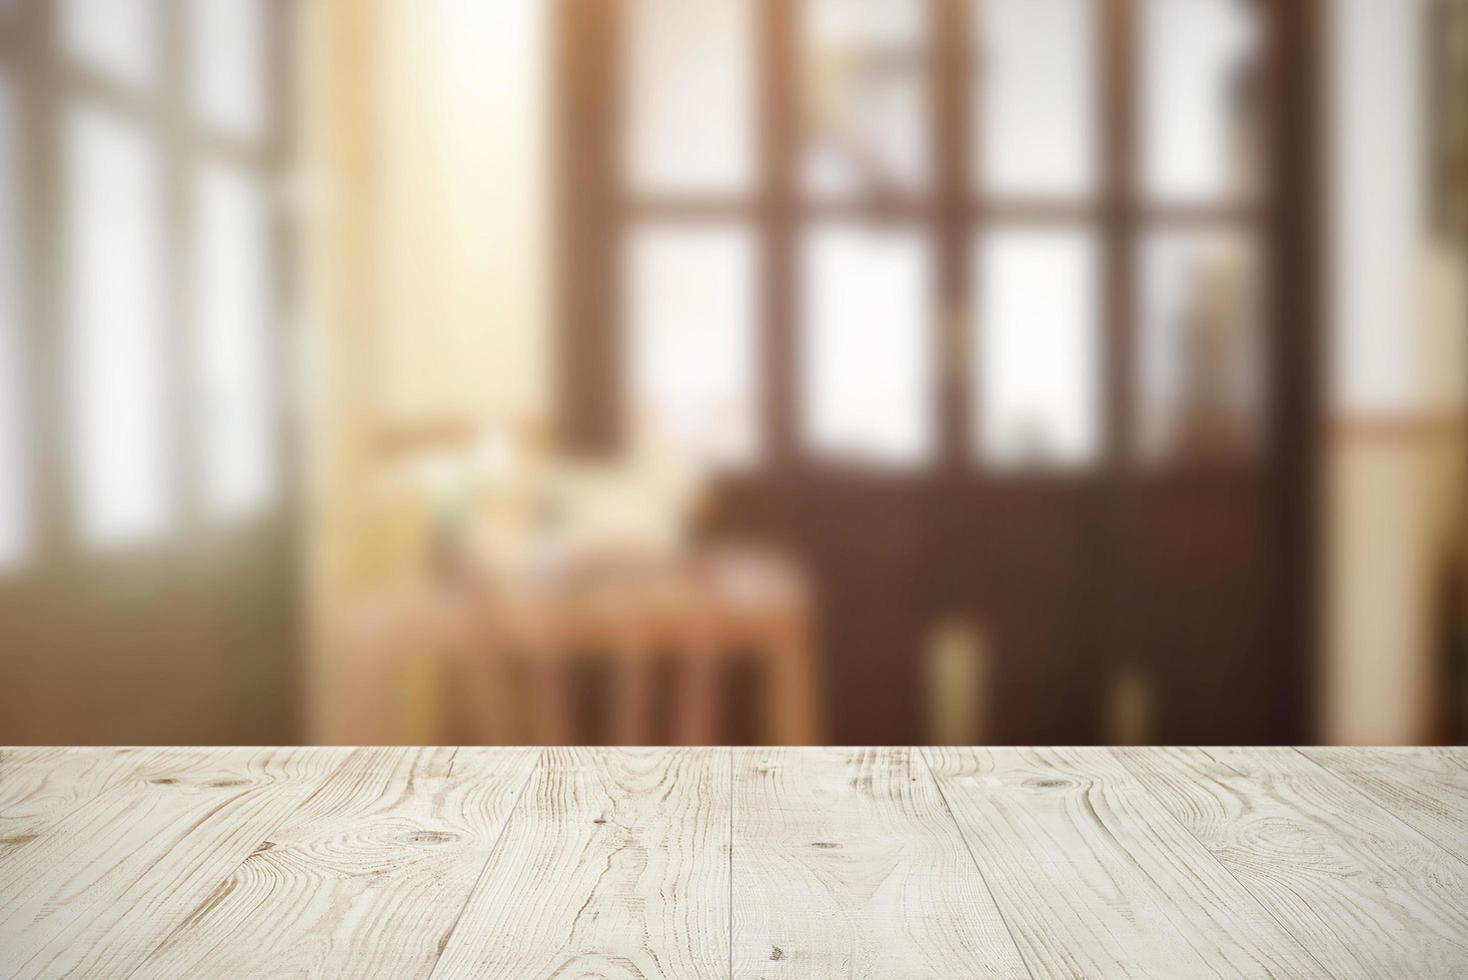 tampo da mesa de tábua de madeira vazia no resumo desfocado do fundo do café ou restaurante, para produto de montagem ou exibição, simulado para exibição do produto foto